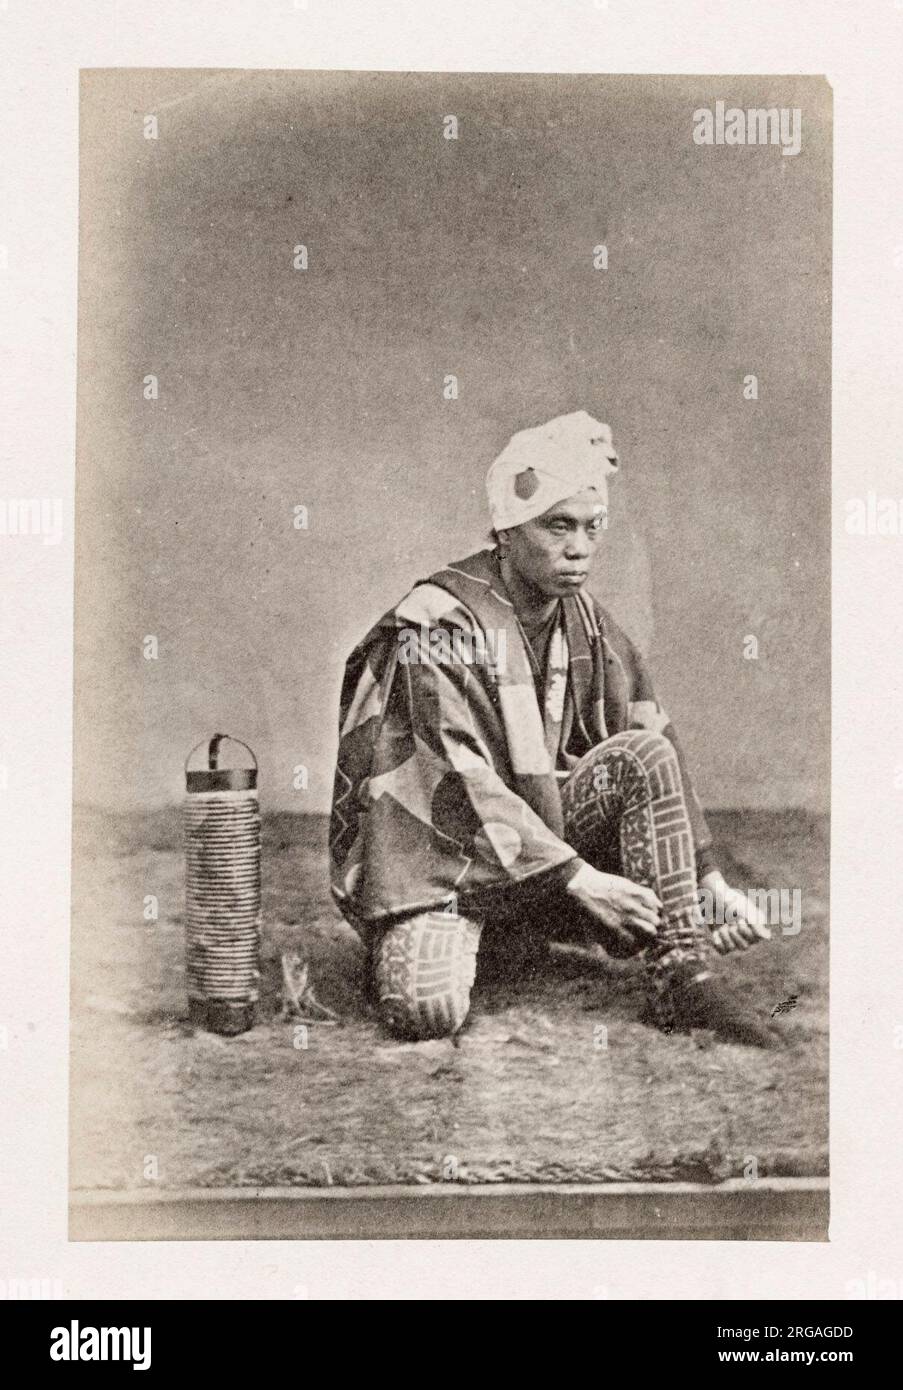 Photographie du XIXe siècle - Portrait photographique du Japon, probablement l'œuvre du photographe japonais Shimooka Renjo - homme avec lanterne nouant des lacets. Banque D'Images